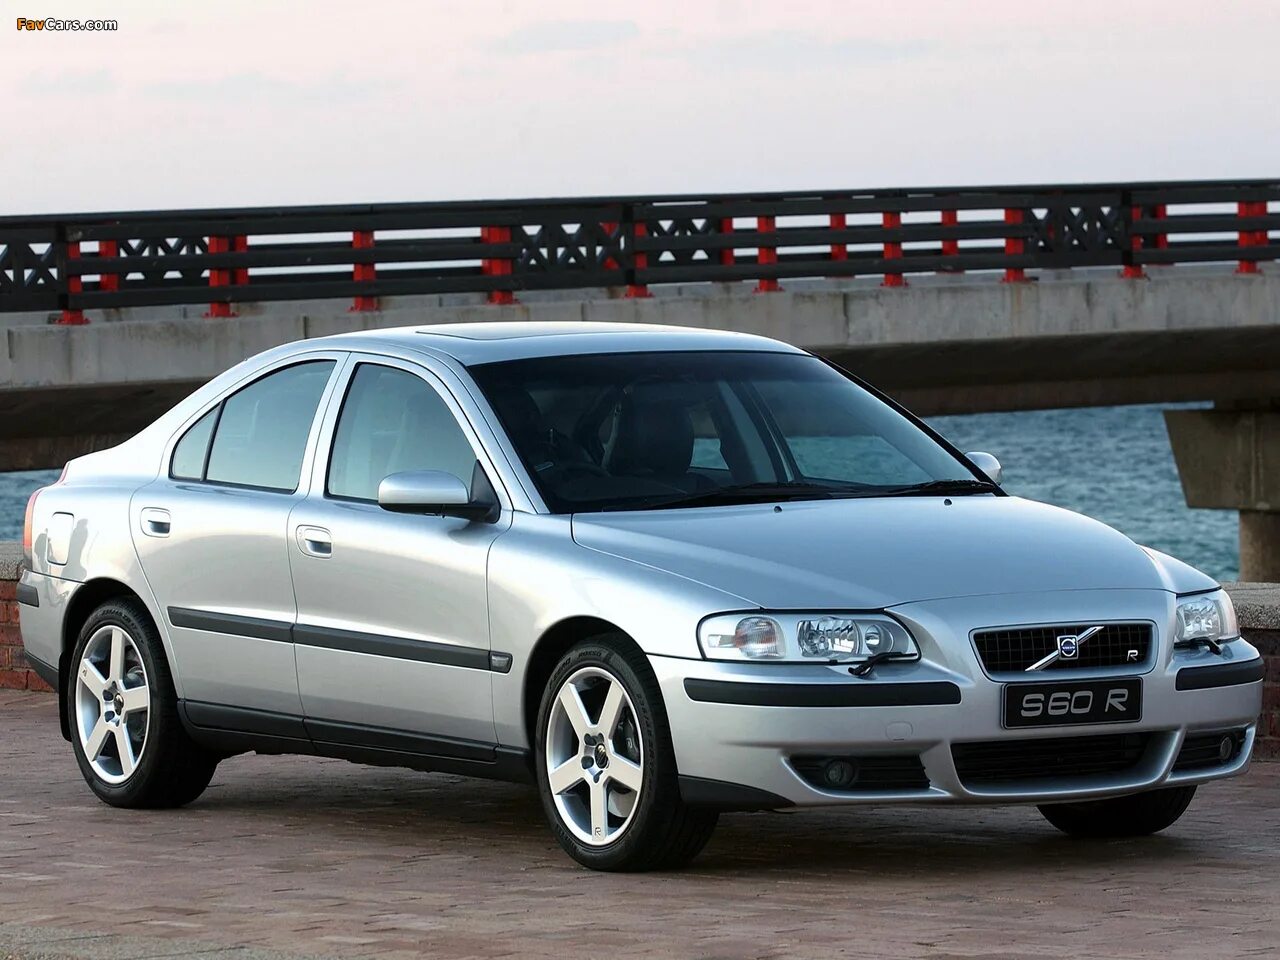 Volvo s60 2004. Volvo s60 r 2004. Вольво s60 2004. Вольво с60 2004.